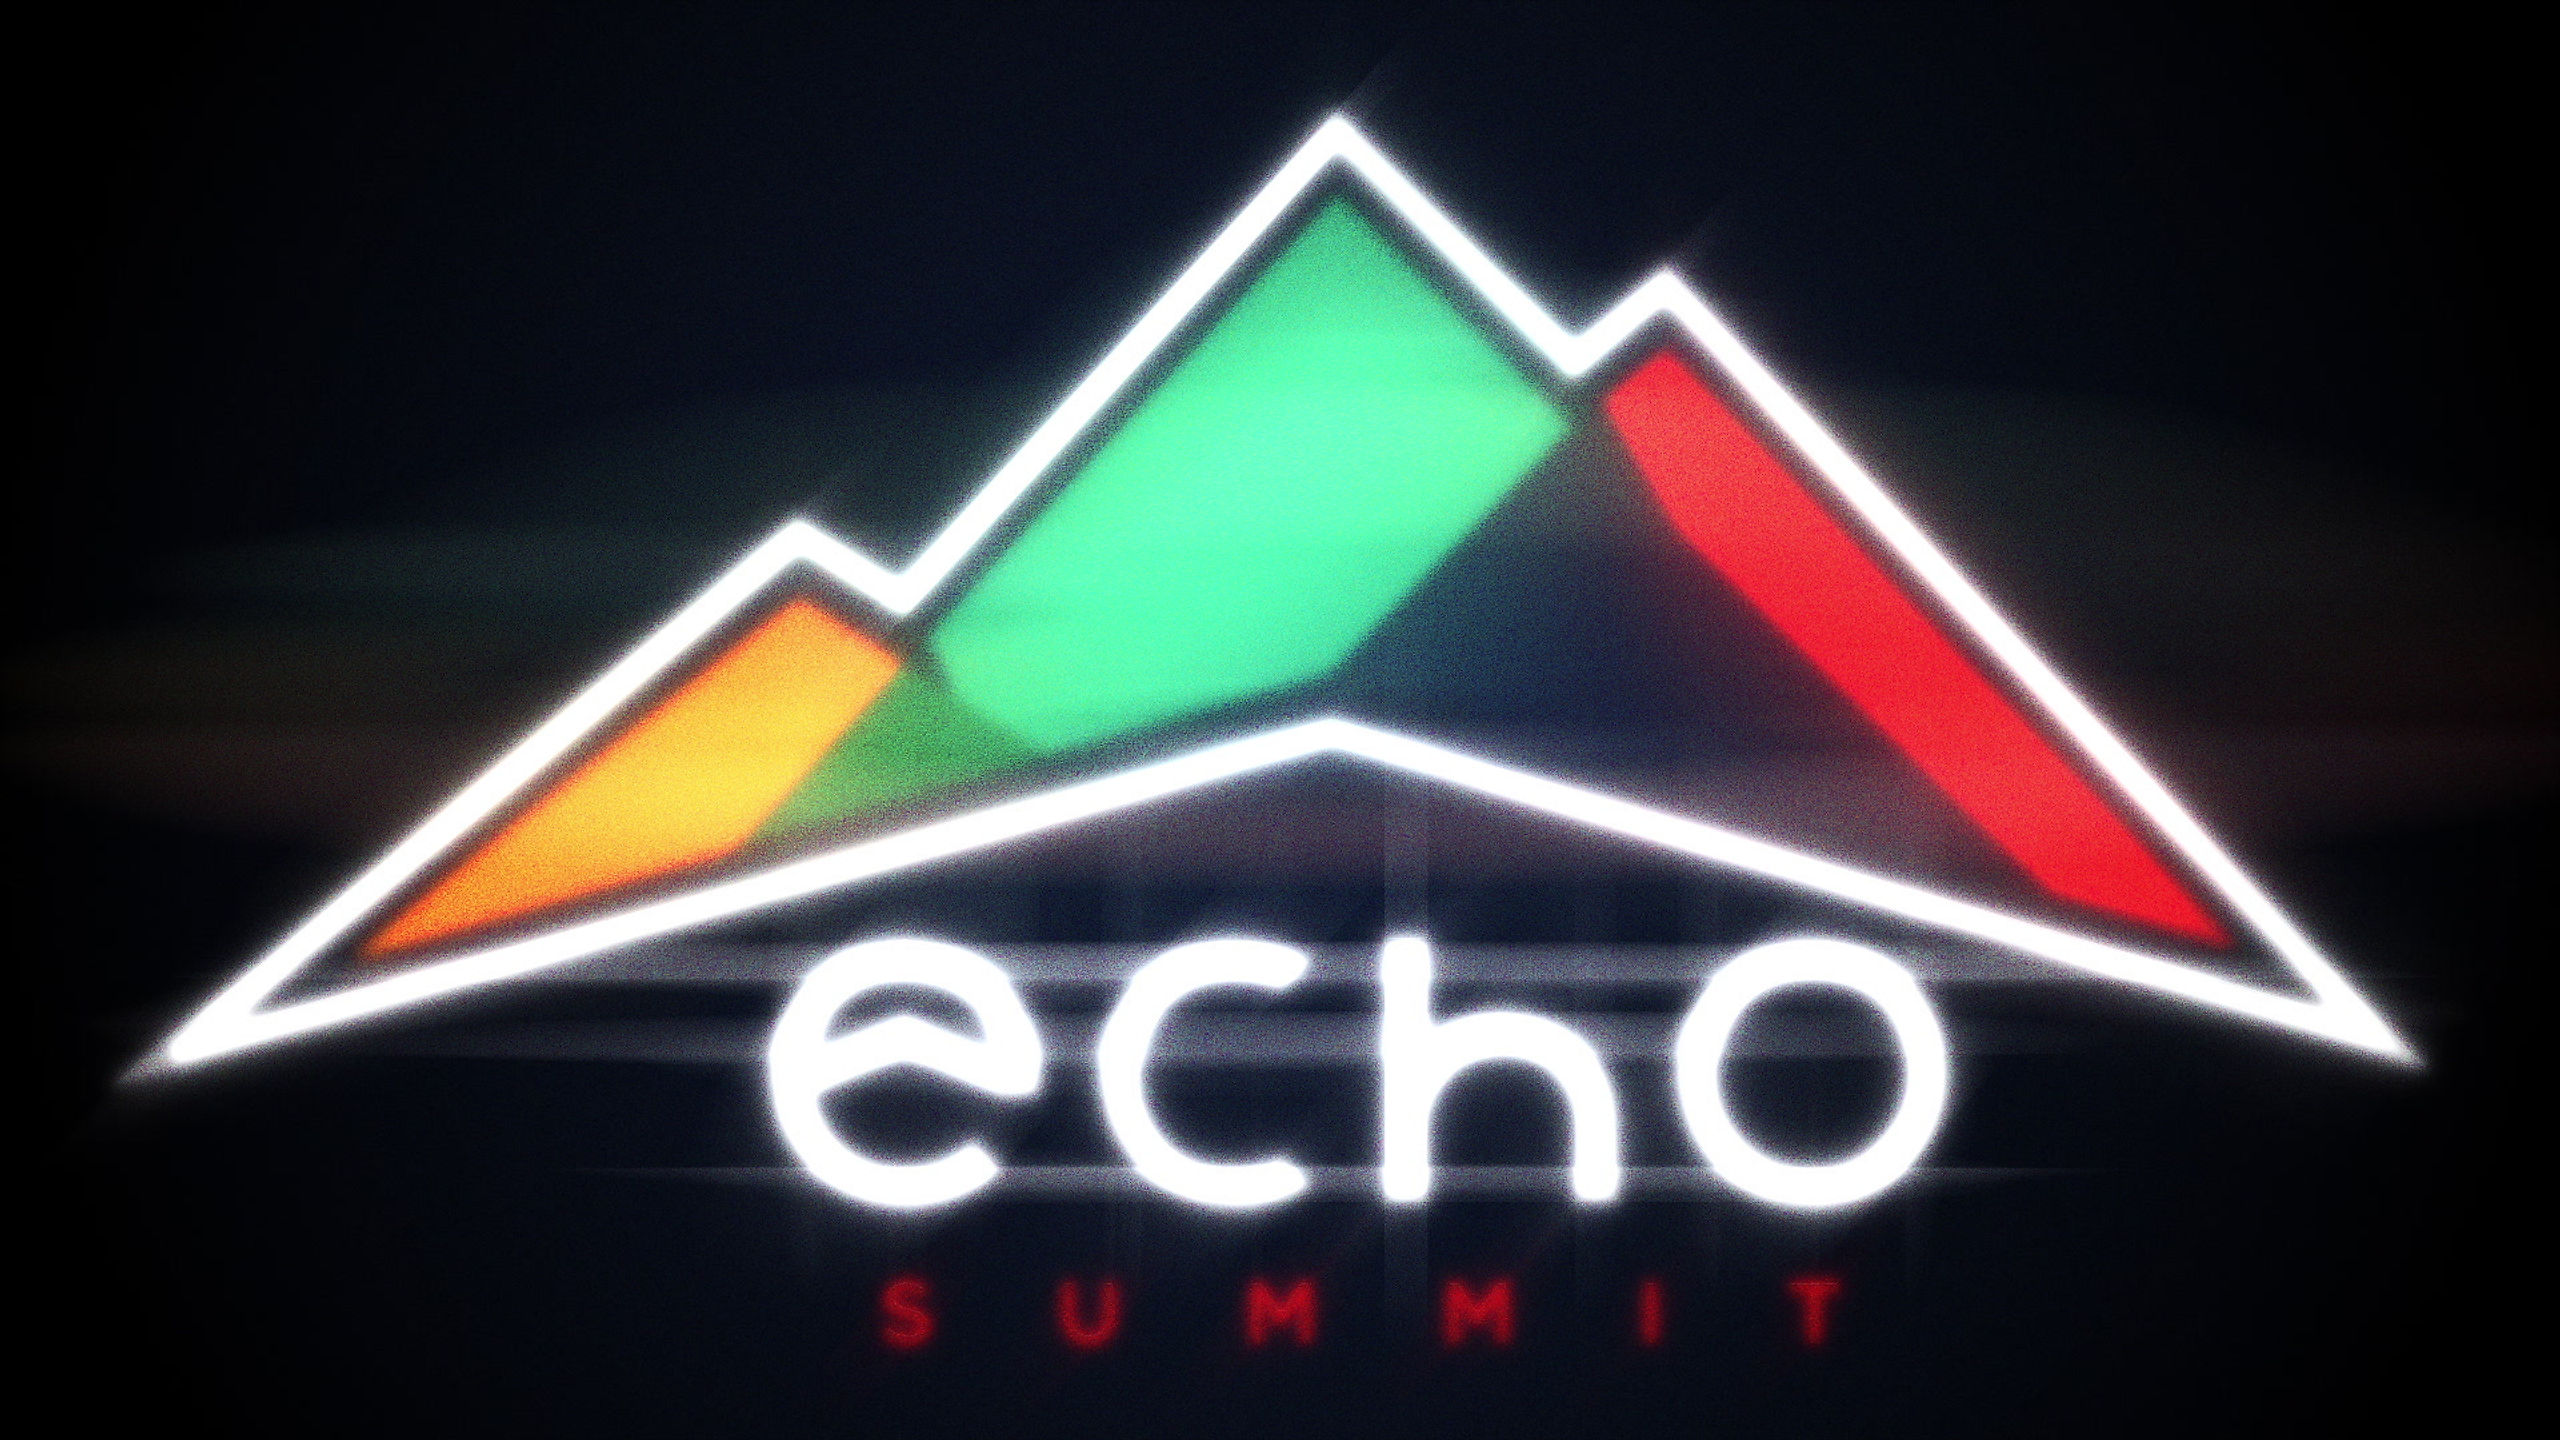 Echo Summit